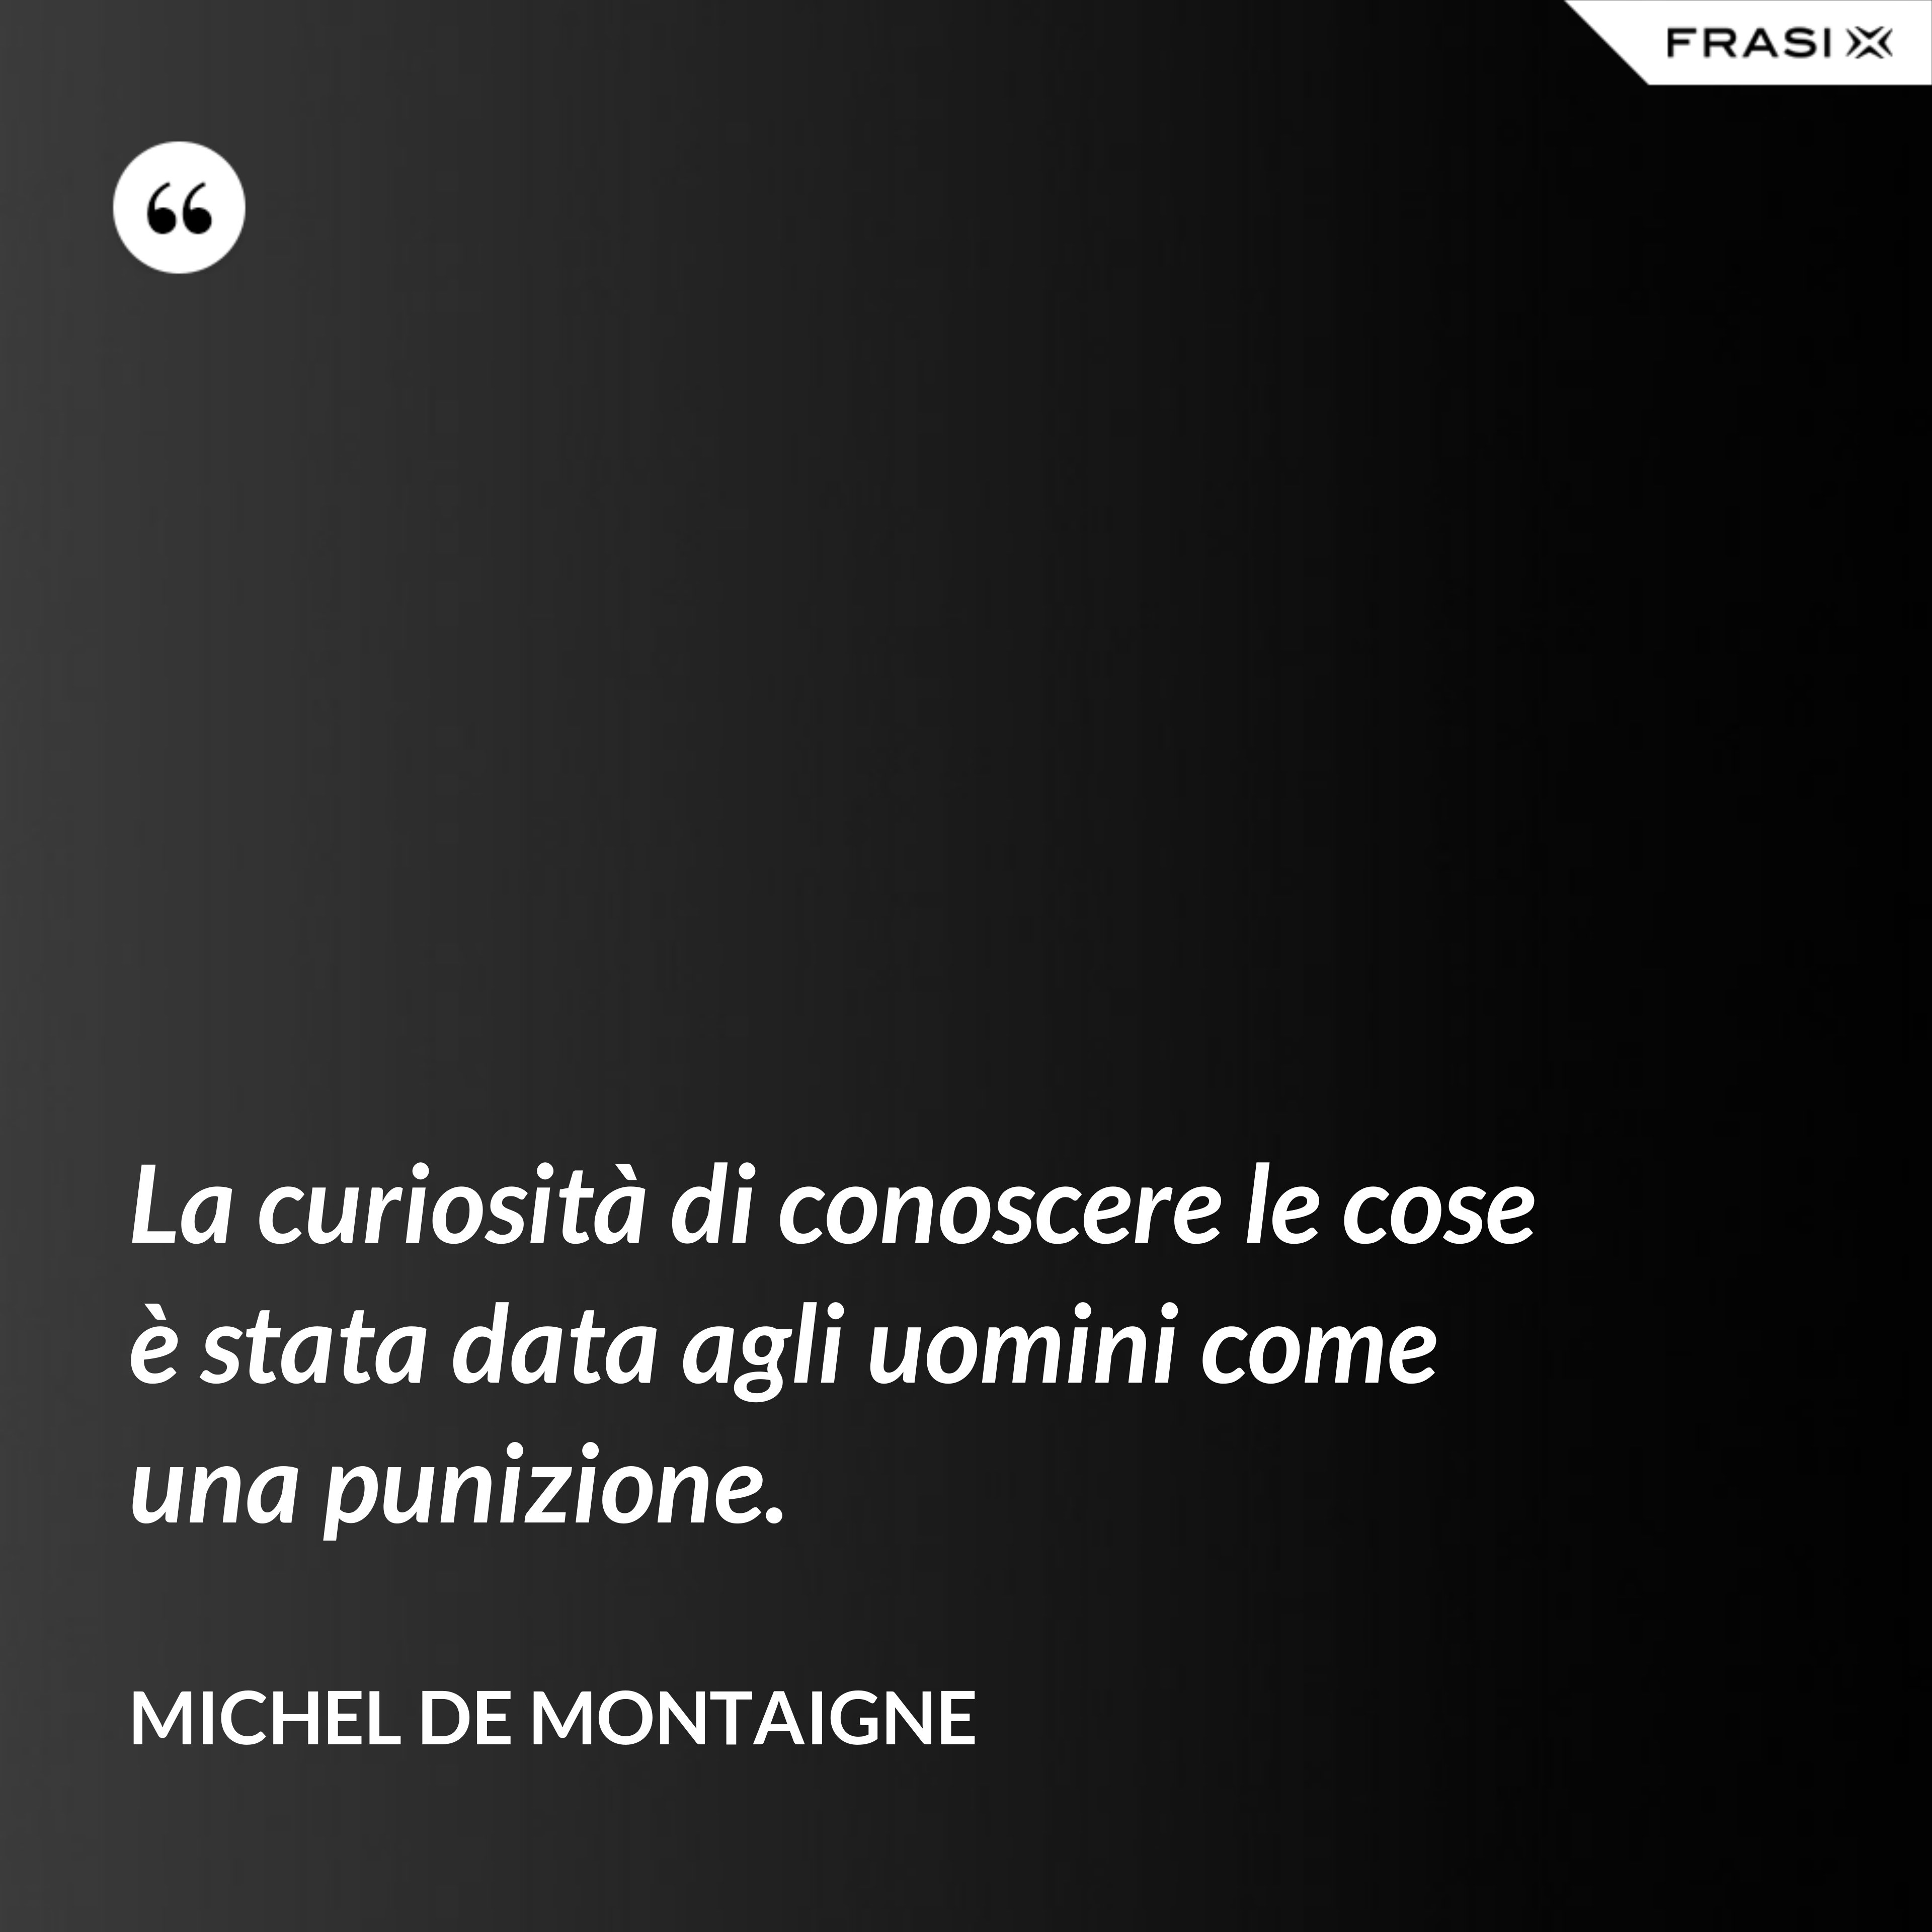 La curiosità di conoscere le cose è stata data agli uomini come una punizione. - Michel de Montaigne